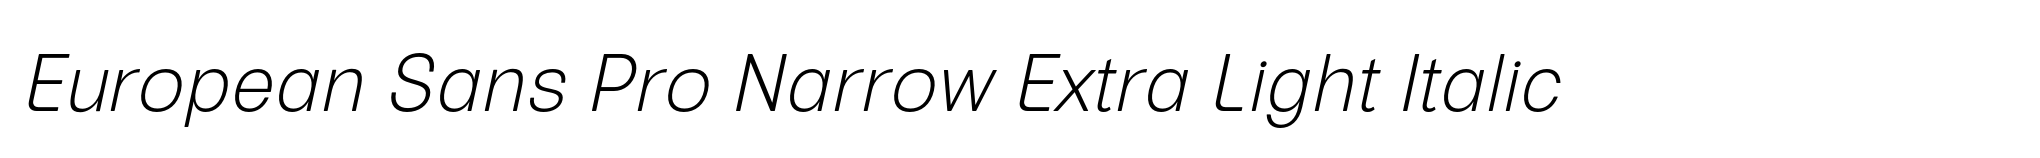 European Sans Pro Narrow Extra Light Italic image